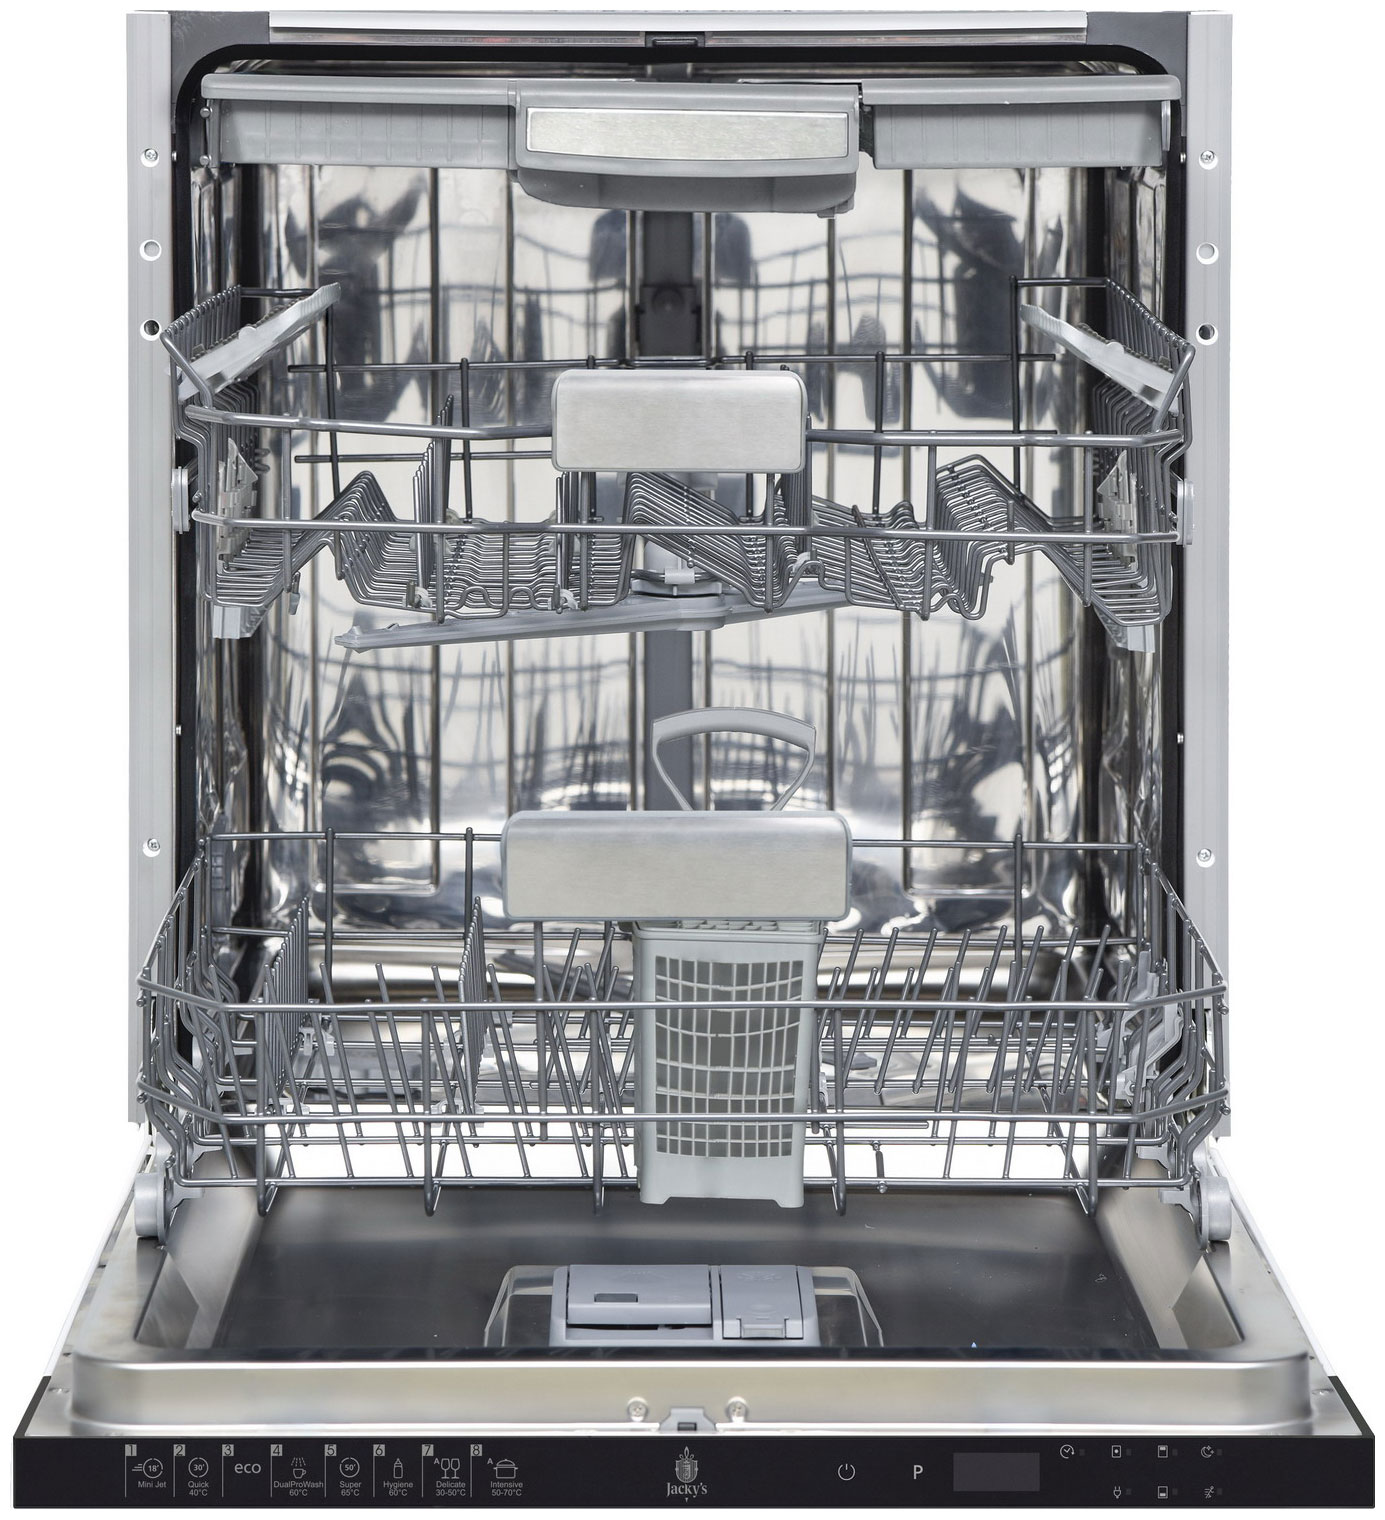 цена Полновстраиваемая посудомоечная машина Jacky's JD FB5301